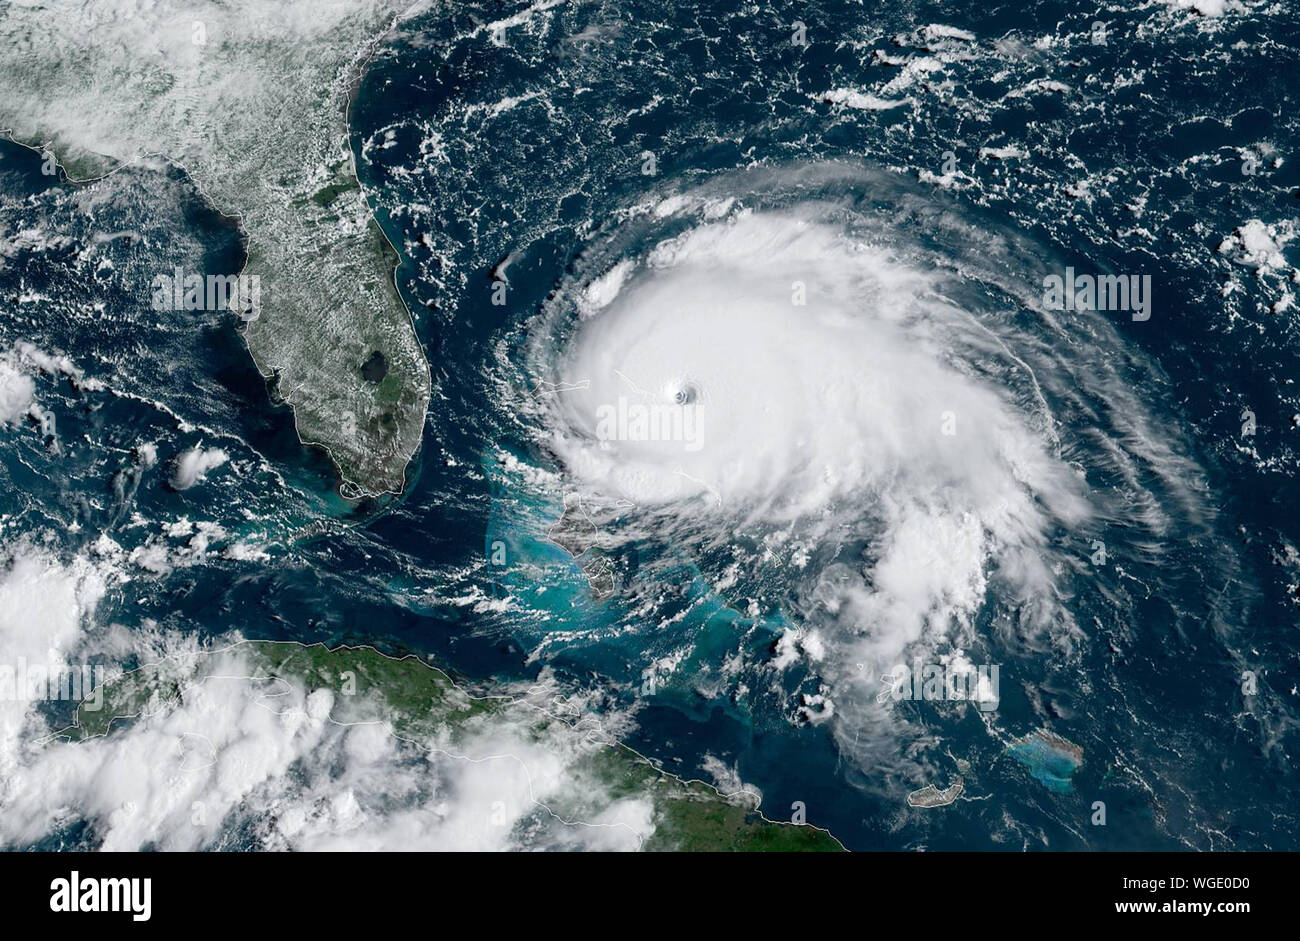 Florida, USA. 01 Sep, 2019. Hurricane Dorian ist durch die NOAA-Satelliten erfasst geht um 10:10 Uhr EST am 1. September 2019, etwa 200 km östlich von West Palm Beach, Florida. Die gesammelten Daten aus einer Air Force Hurricane Hunter Ebene weisen darauf hin, dass die maximale unterstützte Winde zugenommen haben in der Nähe von 160 mph (260 km/h). Dorian ist jetzt ein Hurrikan der Kategorie 5 auf der Saffir-Simpson-Skala Wind. Quelle: UPI/Alamy leben Nachrichten Stockfoto